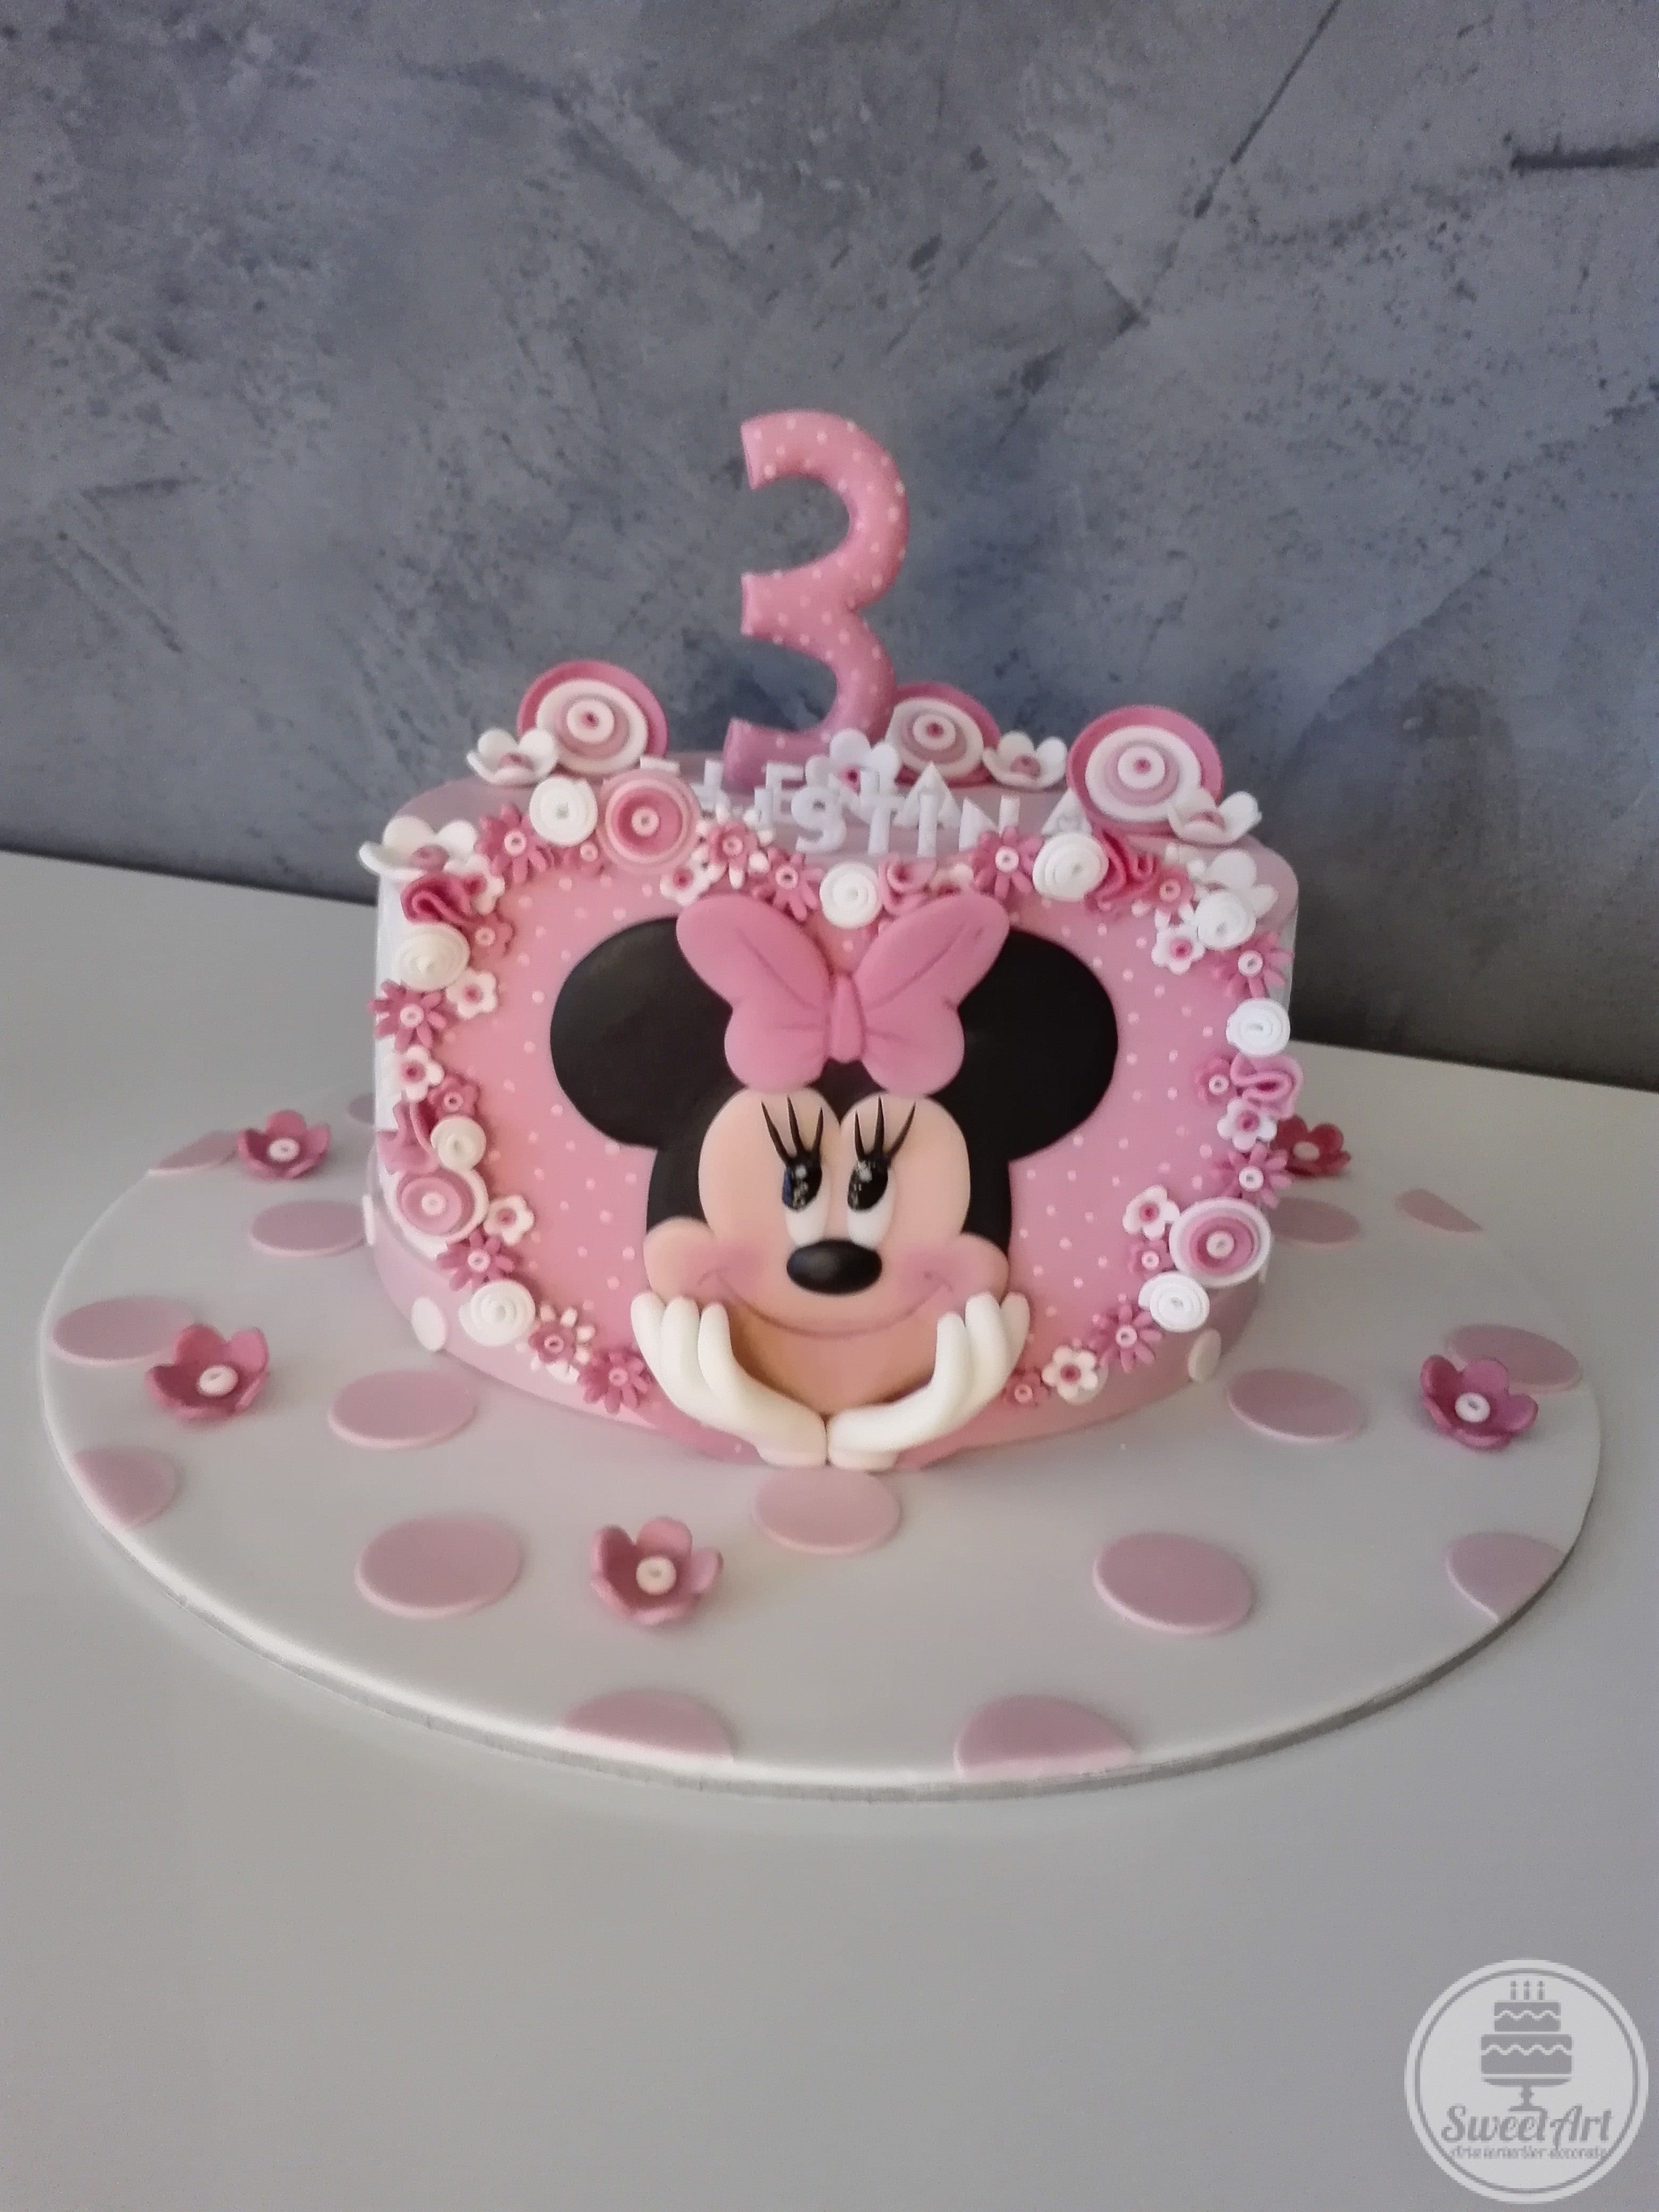 Tort inimă mare roz cu Șoricica Minnie – Minnie Mouse 2D, buline mici albe și multe, multe floricele albe și roz, tort alb cu buline roz și flori